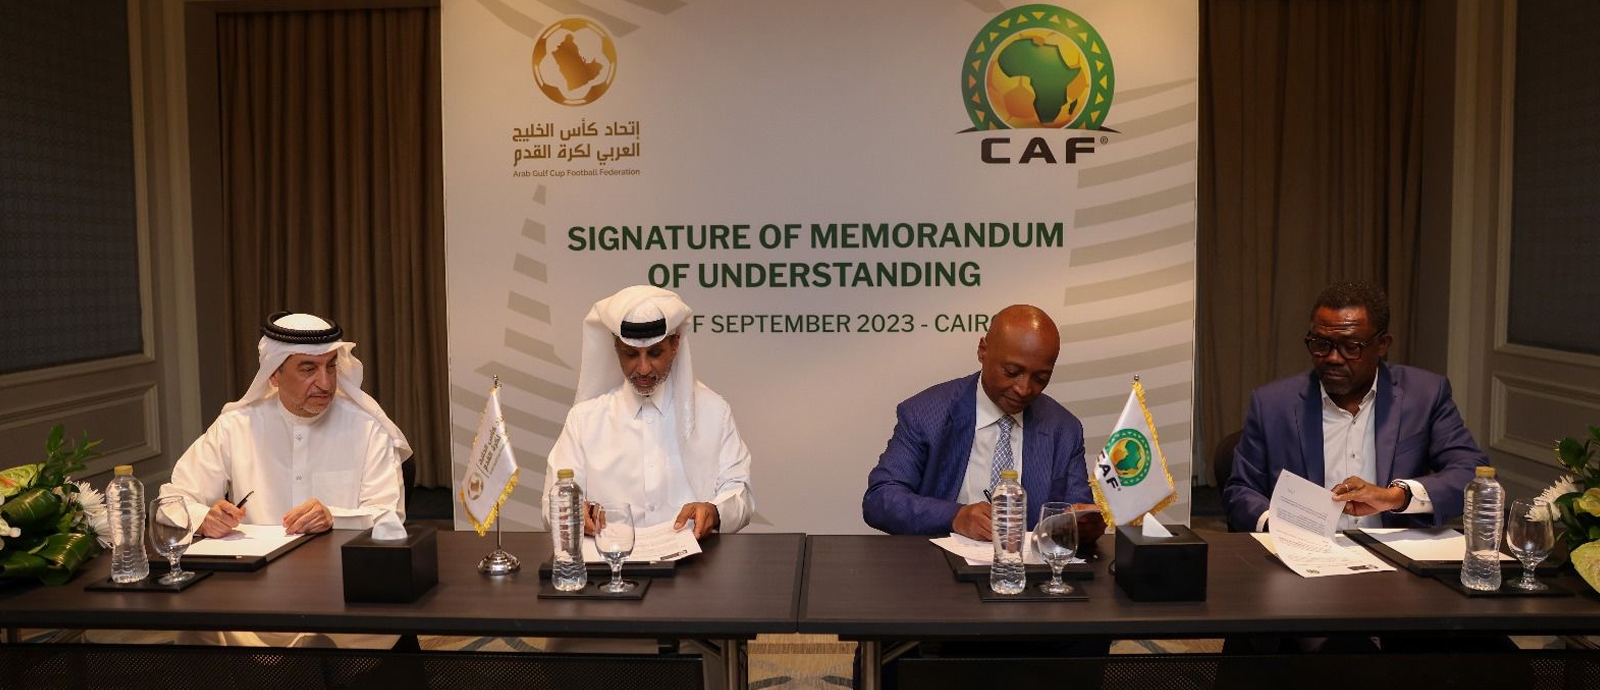 اتحاد كأس الخليج العربي لكرة القدم يوقع مذكرة تفاهم مع الاتحاد الإفريقي لكرة القدم